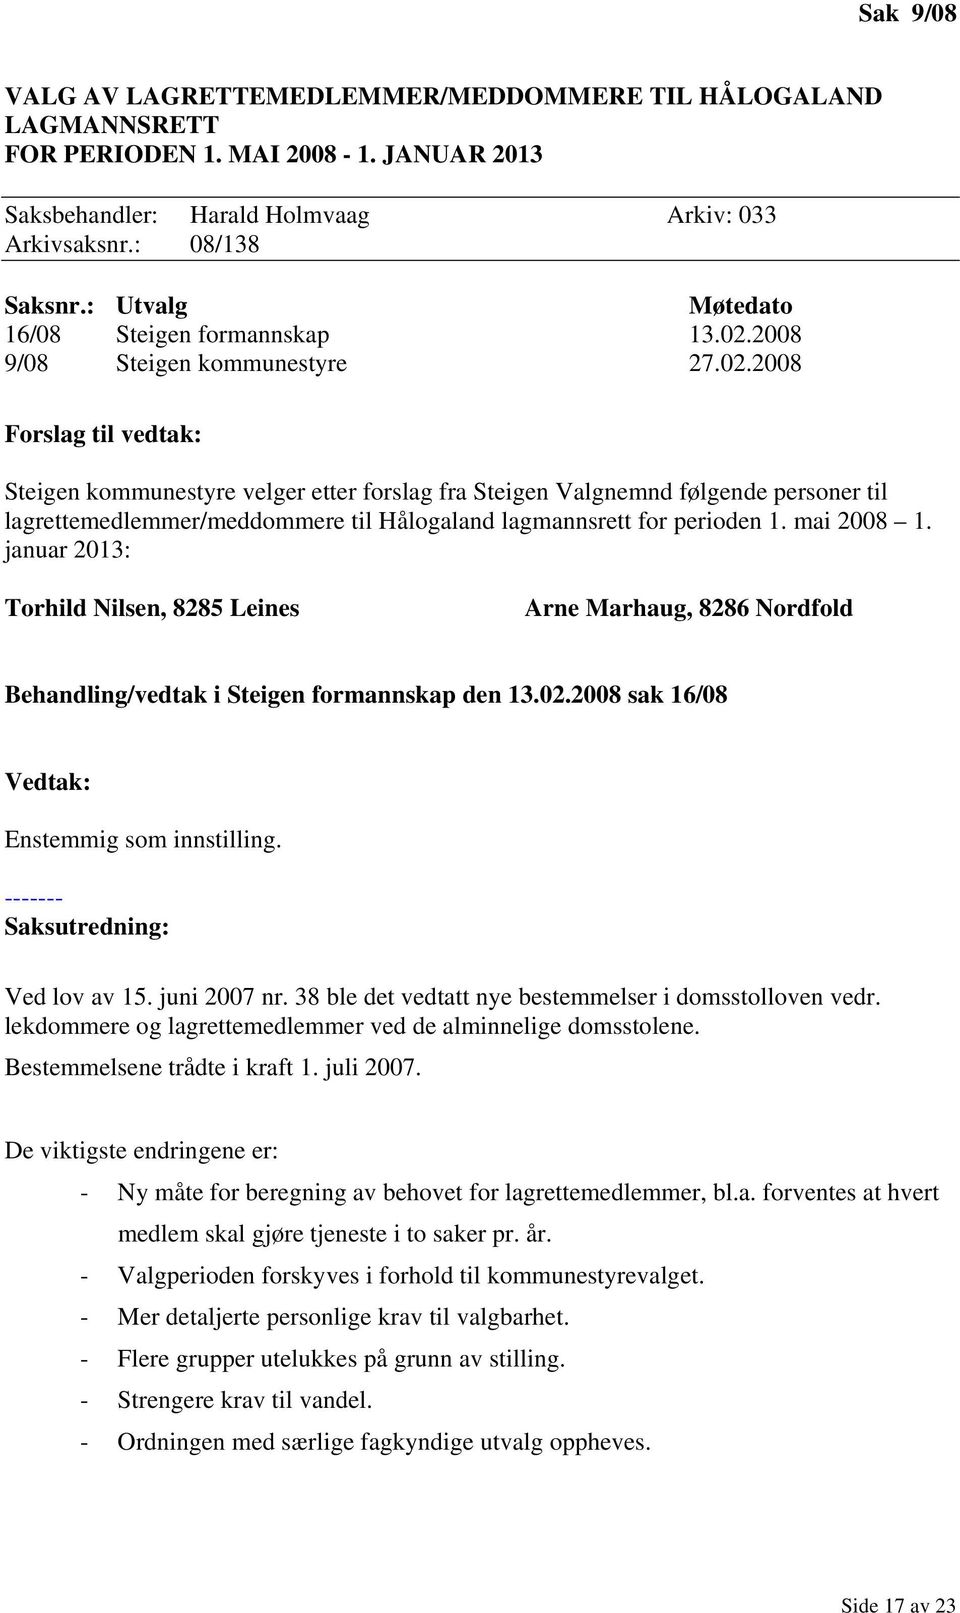 2008 9/08 Steigen kommunestyre 27.02.2008 Steigen kommunestyre velger etter forslag fra Steigen Valgnemnd følgende personer til lagrettemedlemmer/meddommere til Hålogaland lagmannsrett for perioden 1.